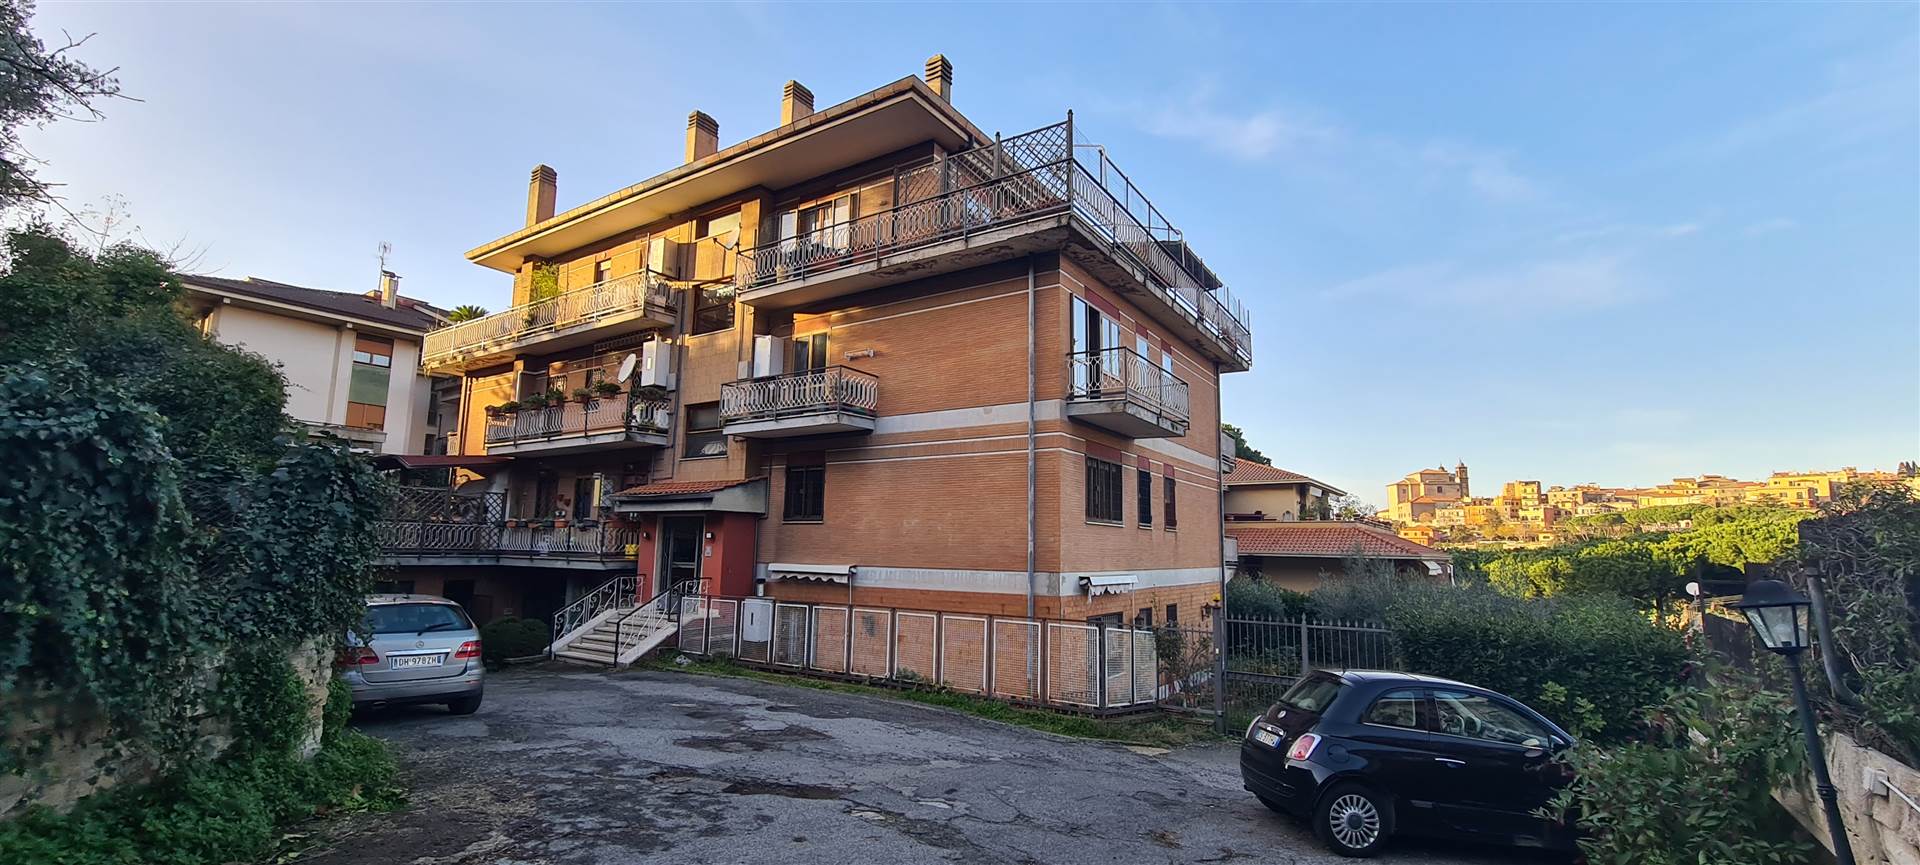 Appartamento in vendita a Monte Porzio Catone, 5 locali, prezzo € 270.000 | CambioCasa.it